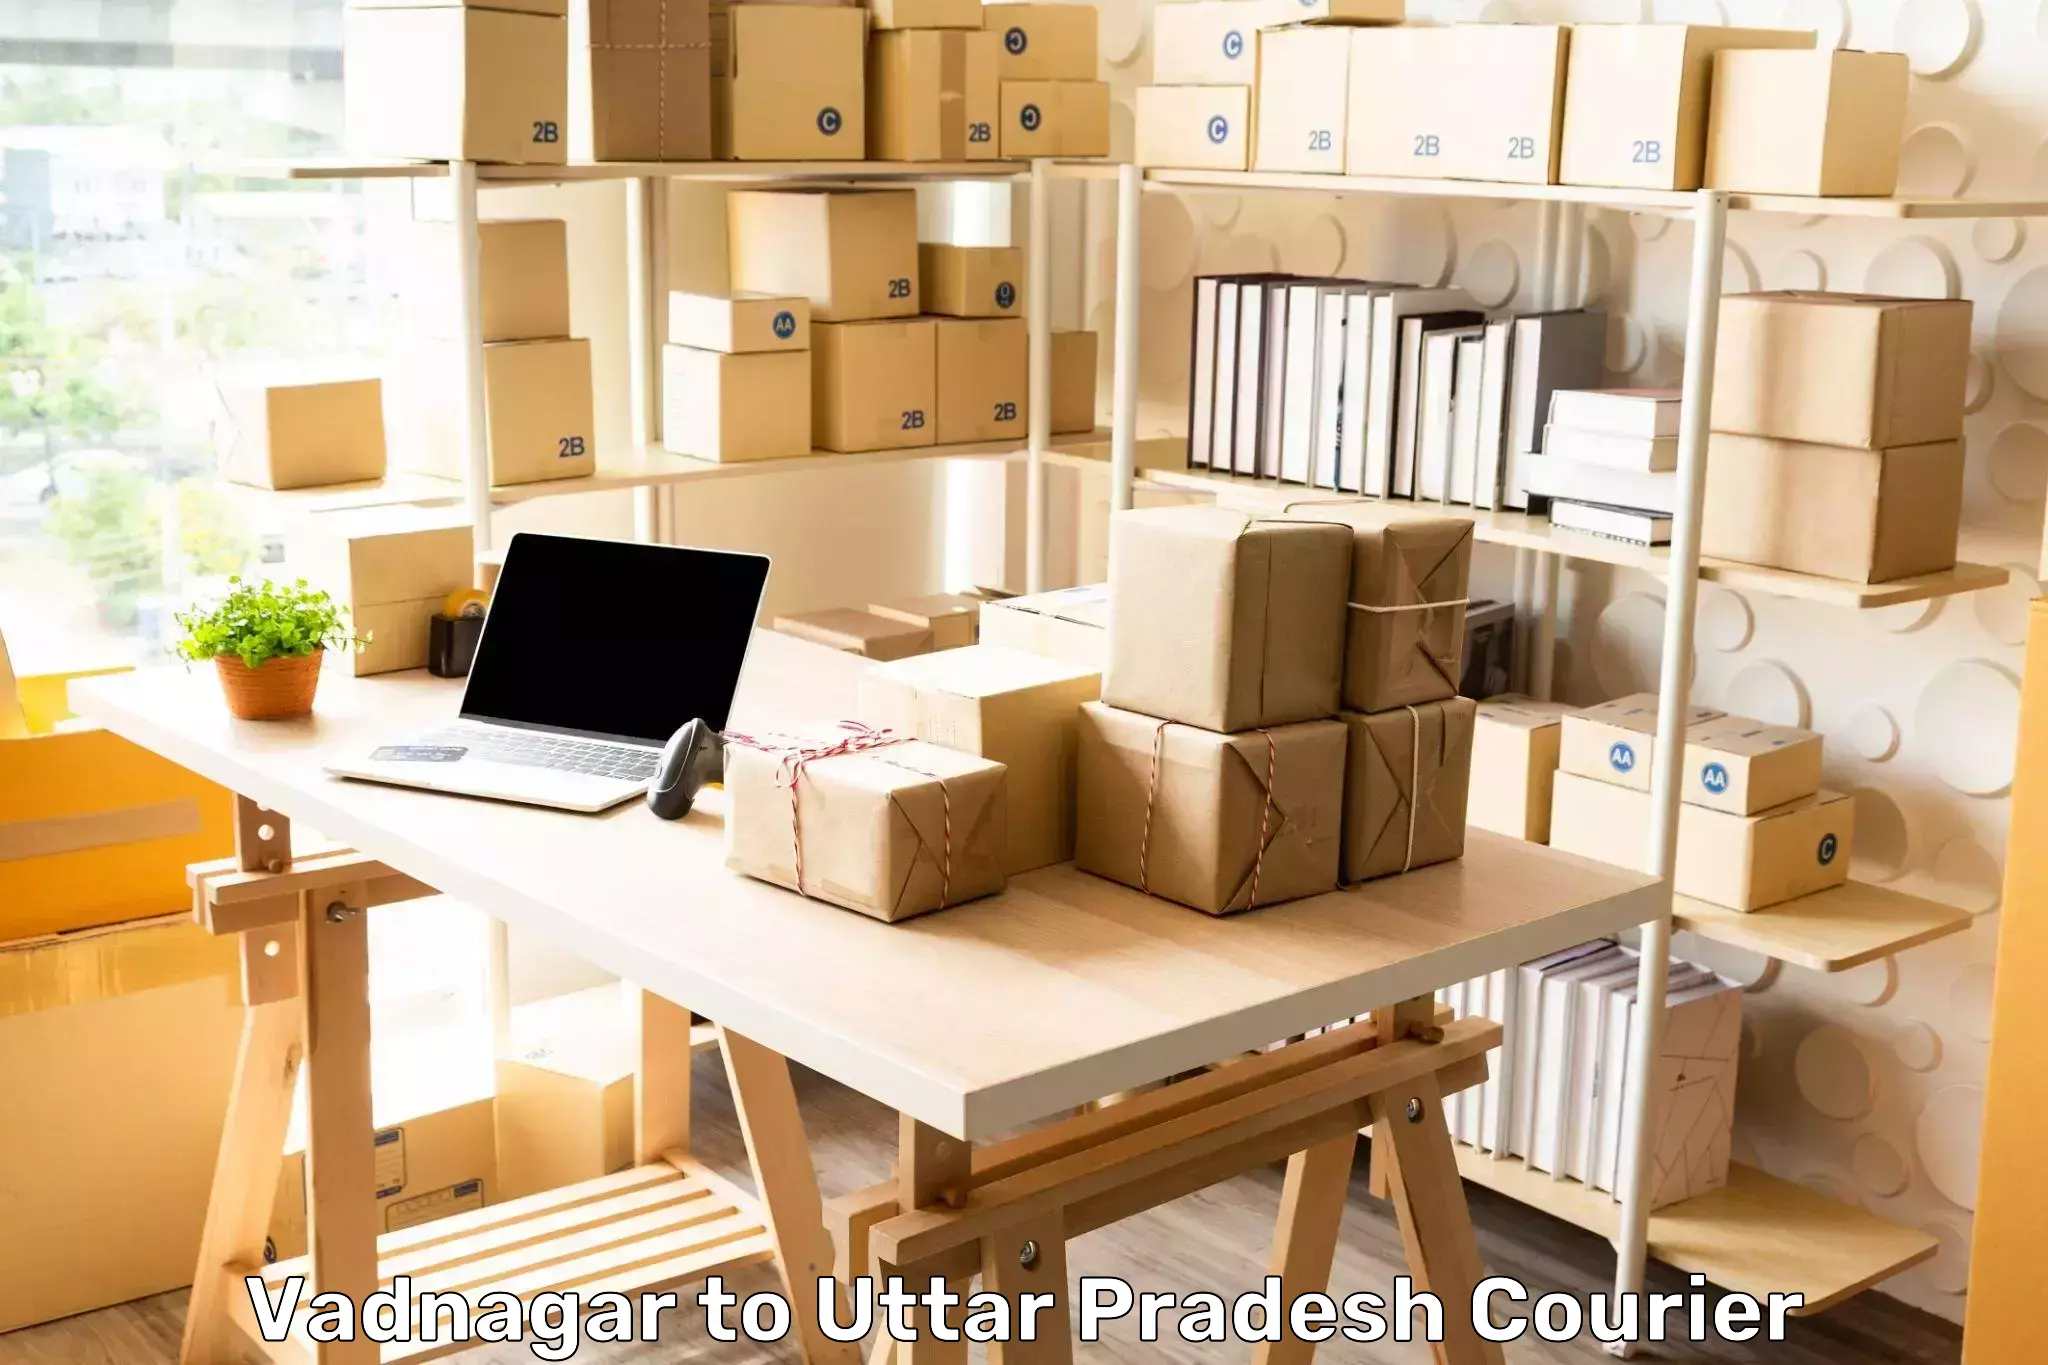 Personal parcel delivery Vadnagar to Dudhinagar